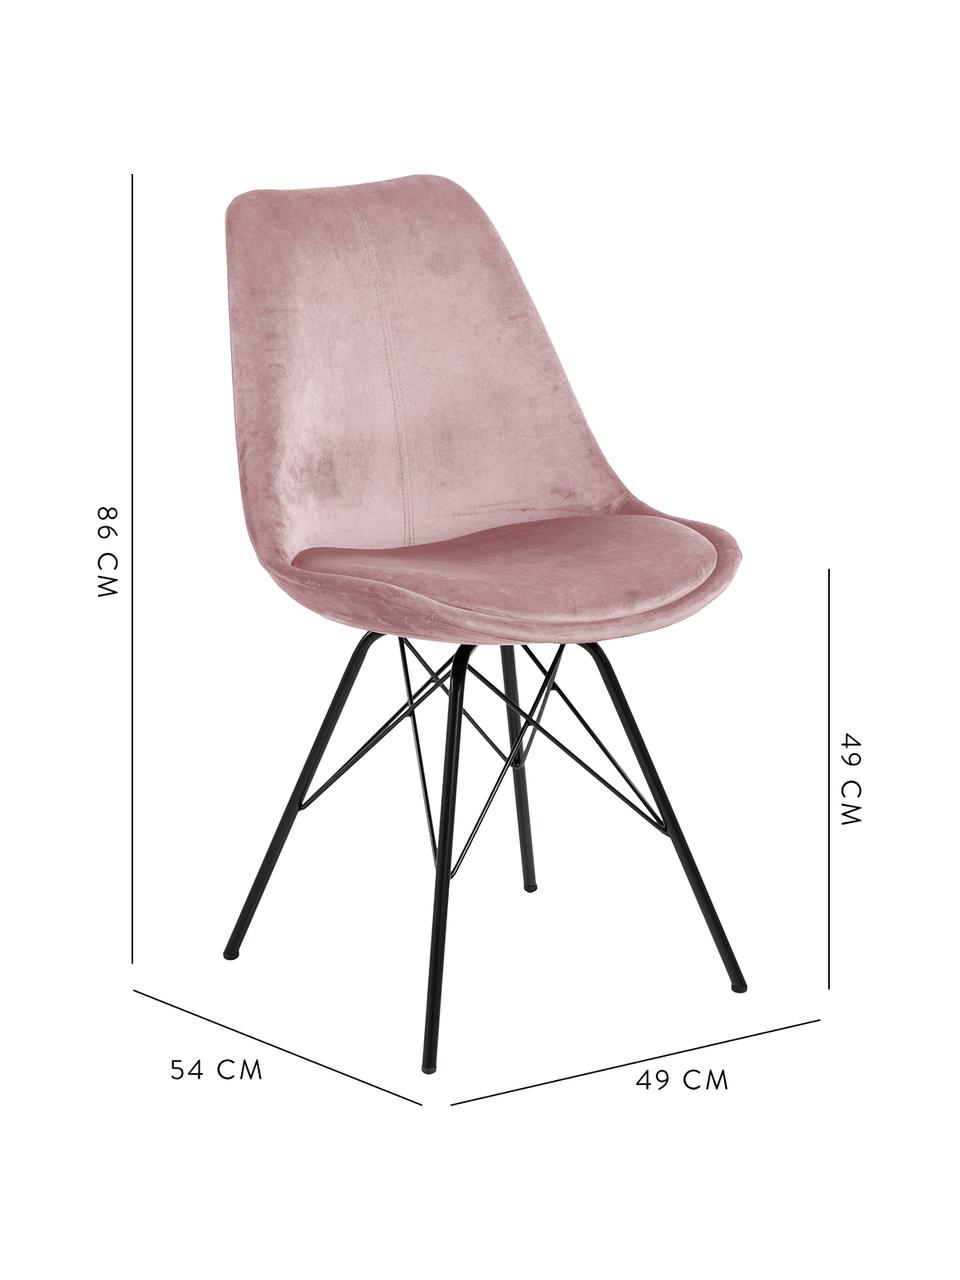 Fluwelen stoelen Eris, 2 stuks, Bekleding: polyester fluweel De bekl, Poten: gepoedercoat metaalkleuri, Fluweel oudroze, poten zwart, B 49 x D 54 cm